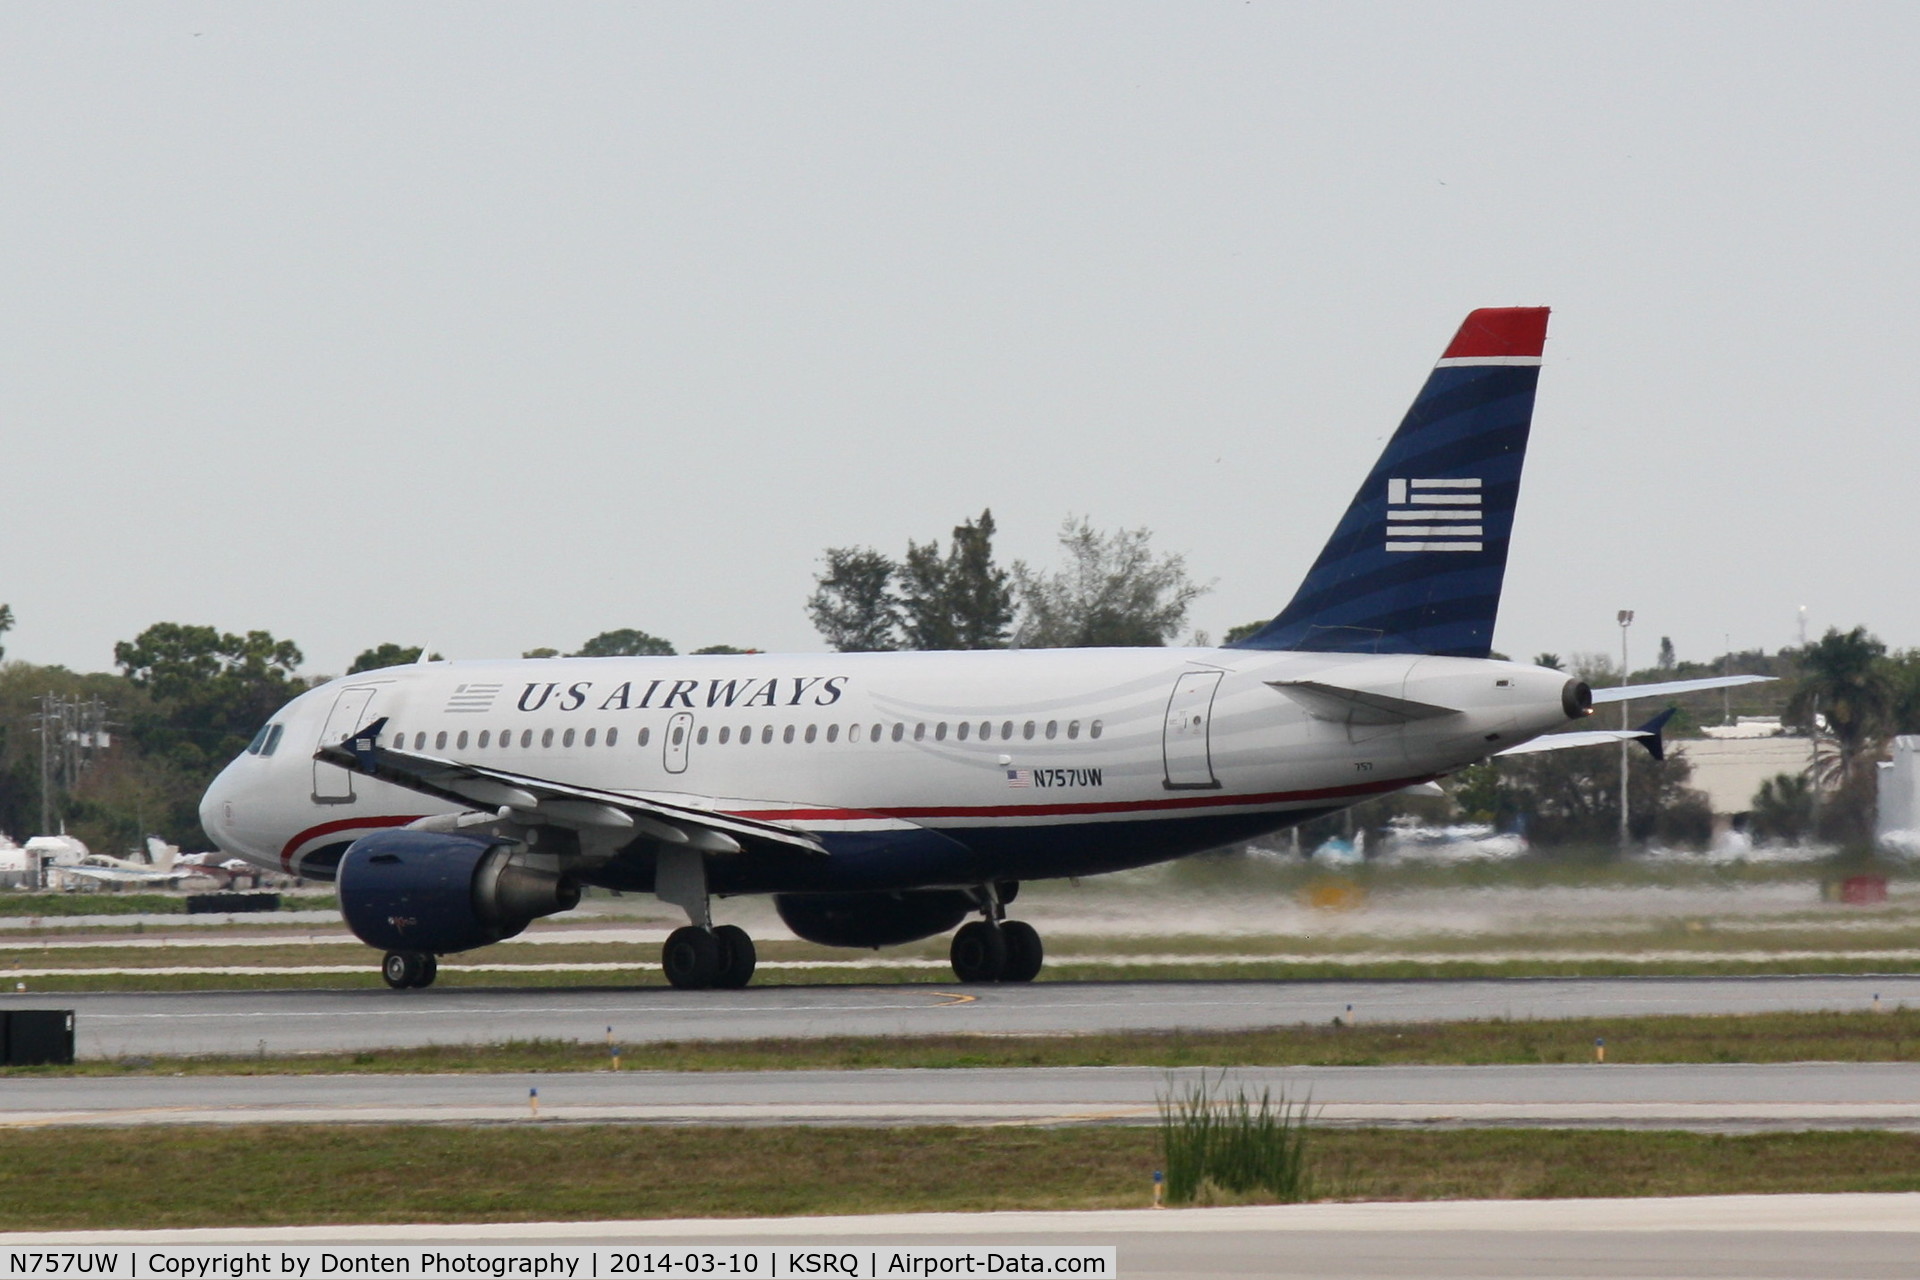 N757UW, 2000 Airbus A319-112 C/N 1342, US Air Flight 1801 (N757UW) departs Sarasota-Bradenton International Airport enroute to Charlotte-Douglas International Airport